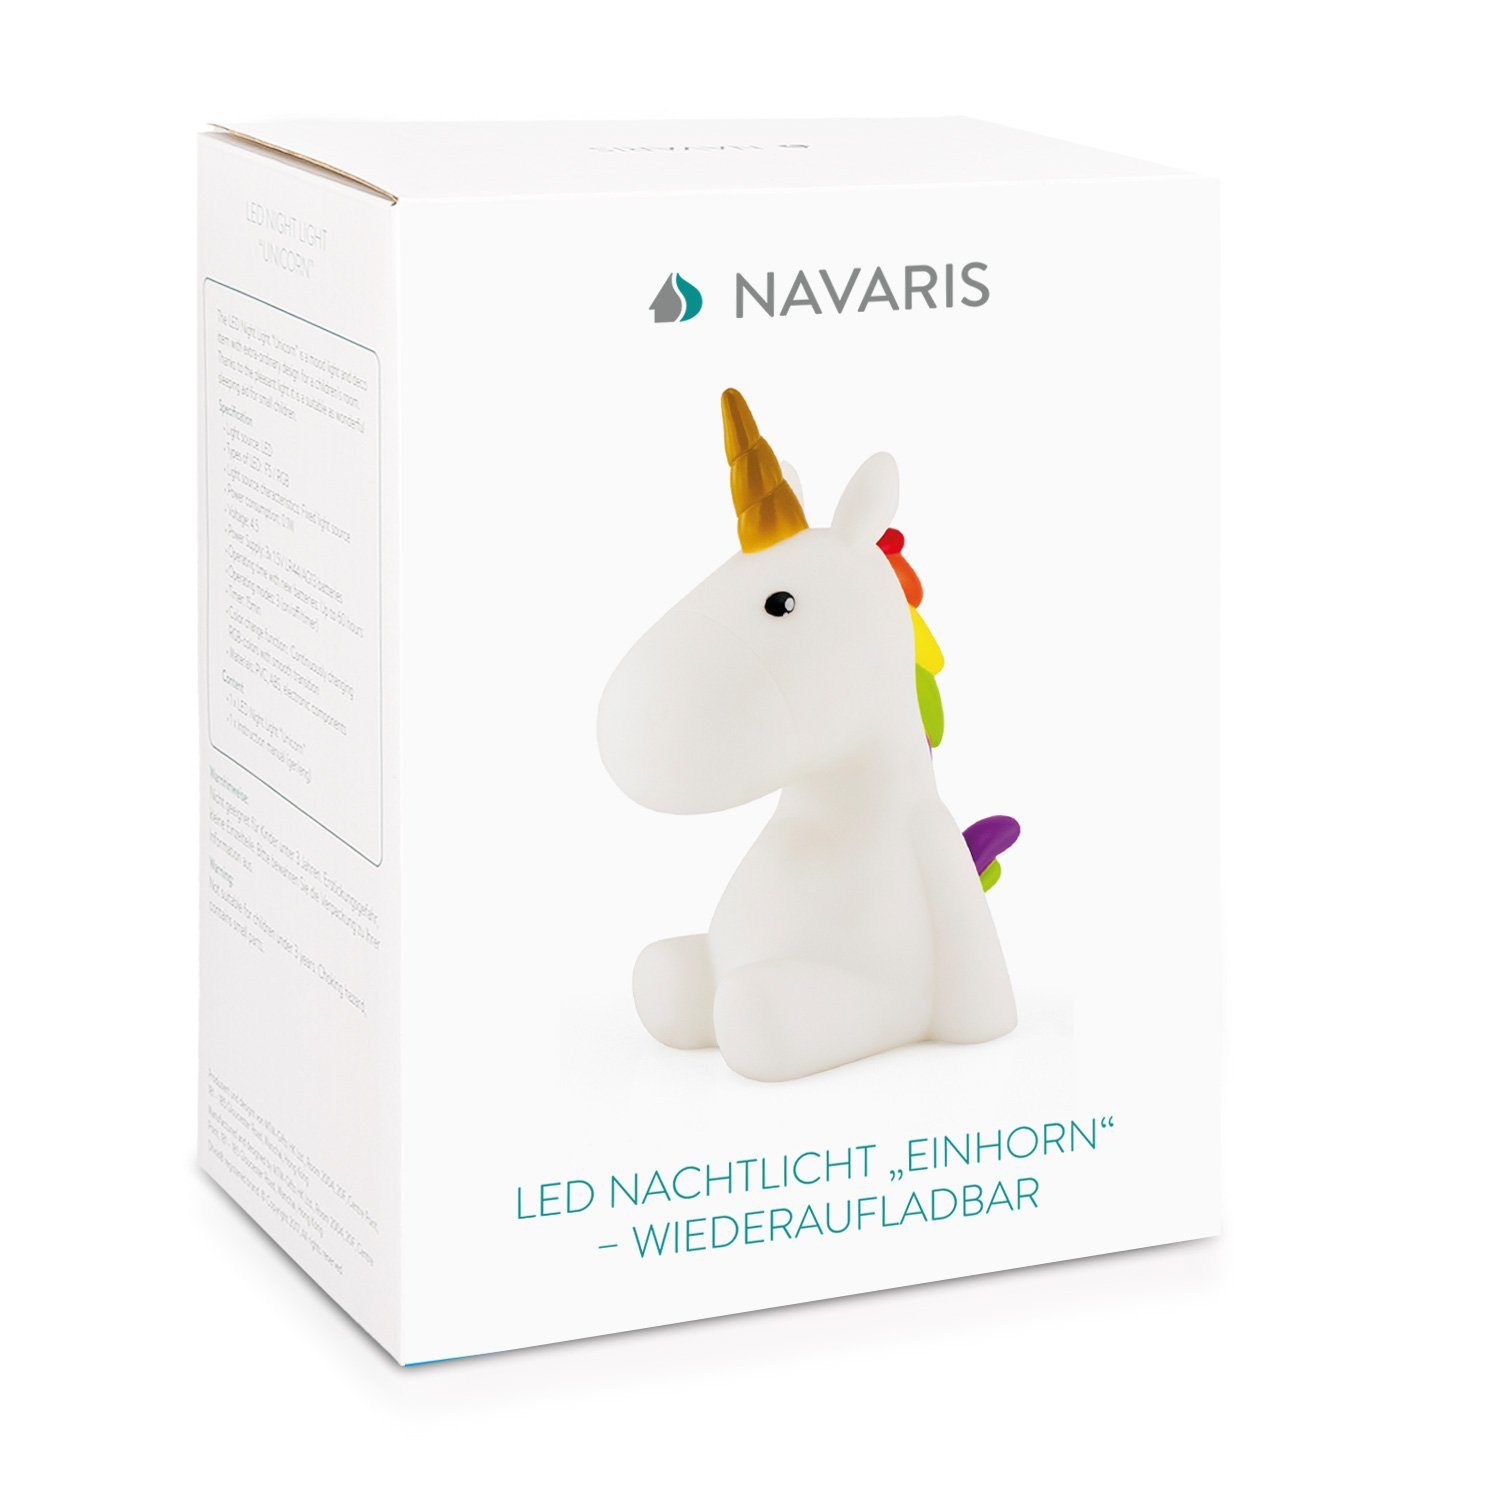 Weiß Navaris Wiederaufladbare Timer LED Nachtleuchte, 60 Nachtlicht Einhorn min LED